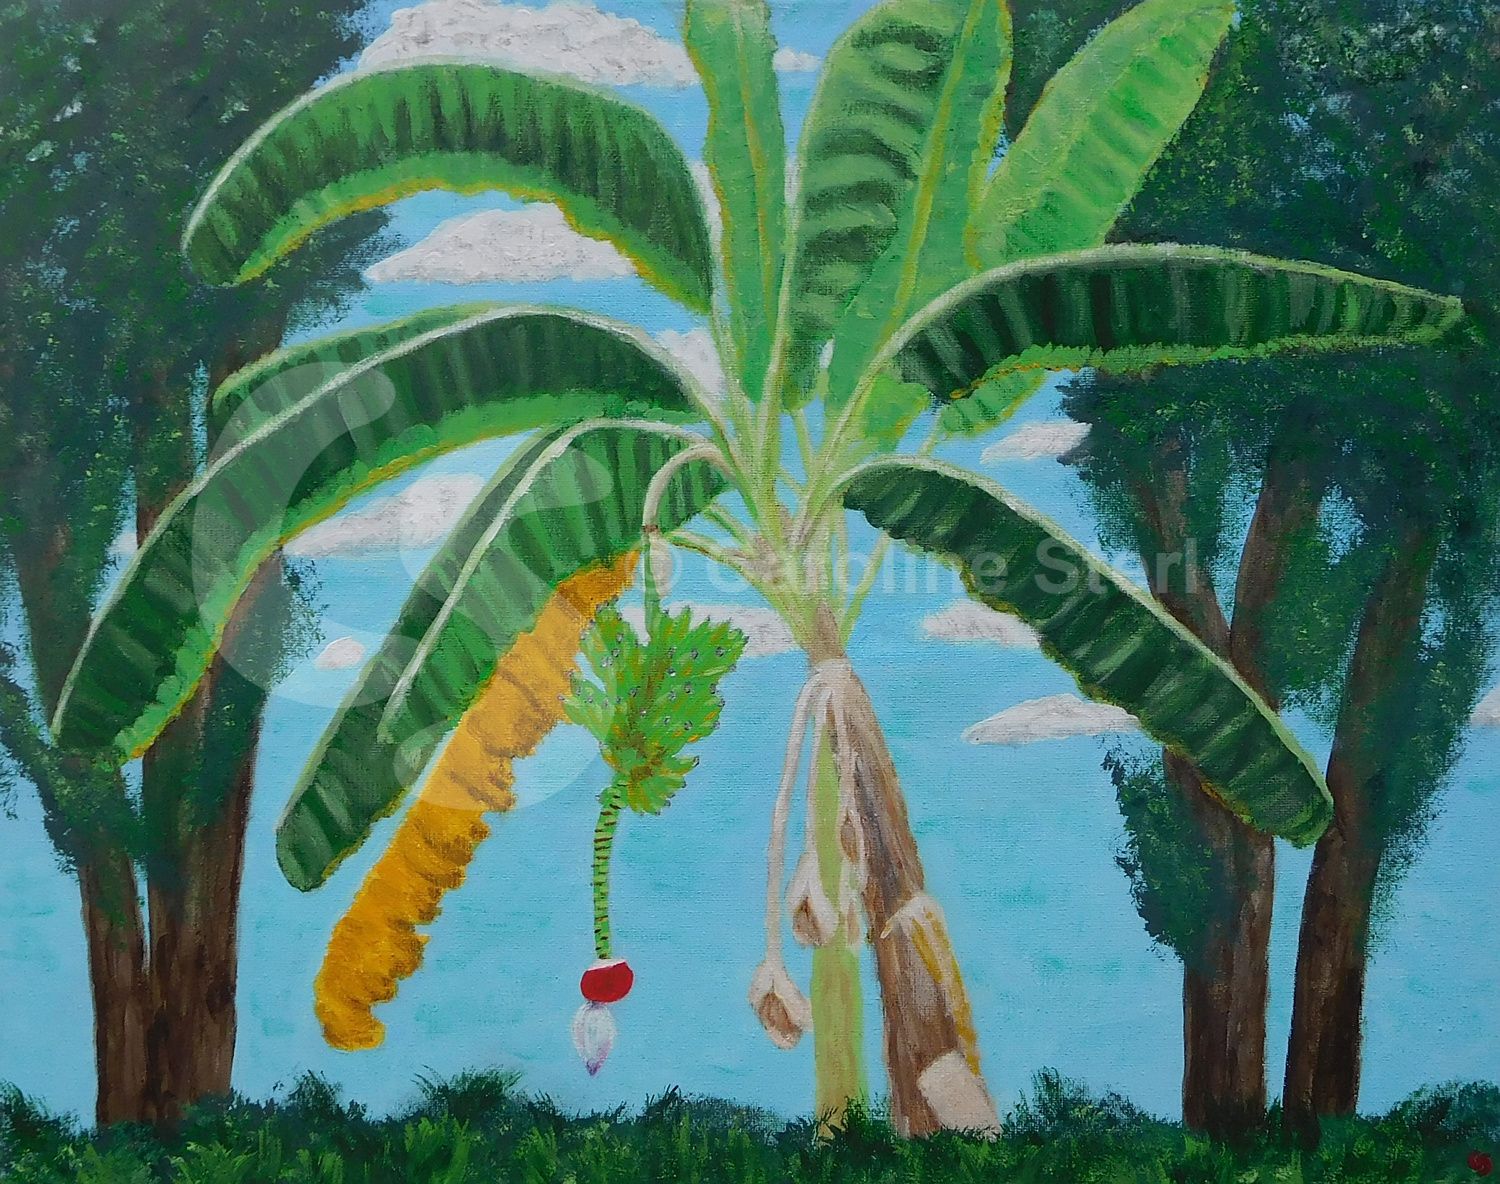 Painting: Banana Tree